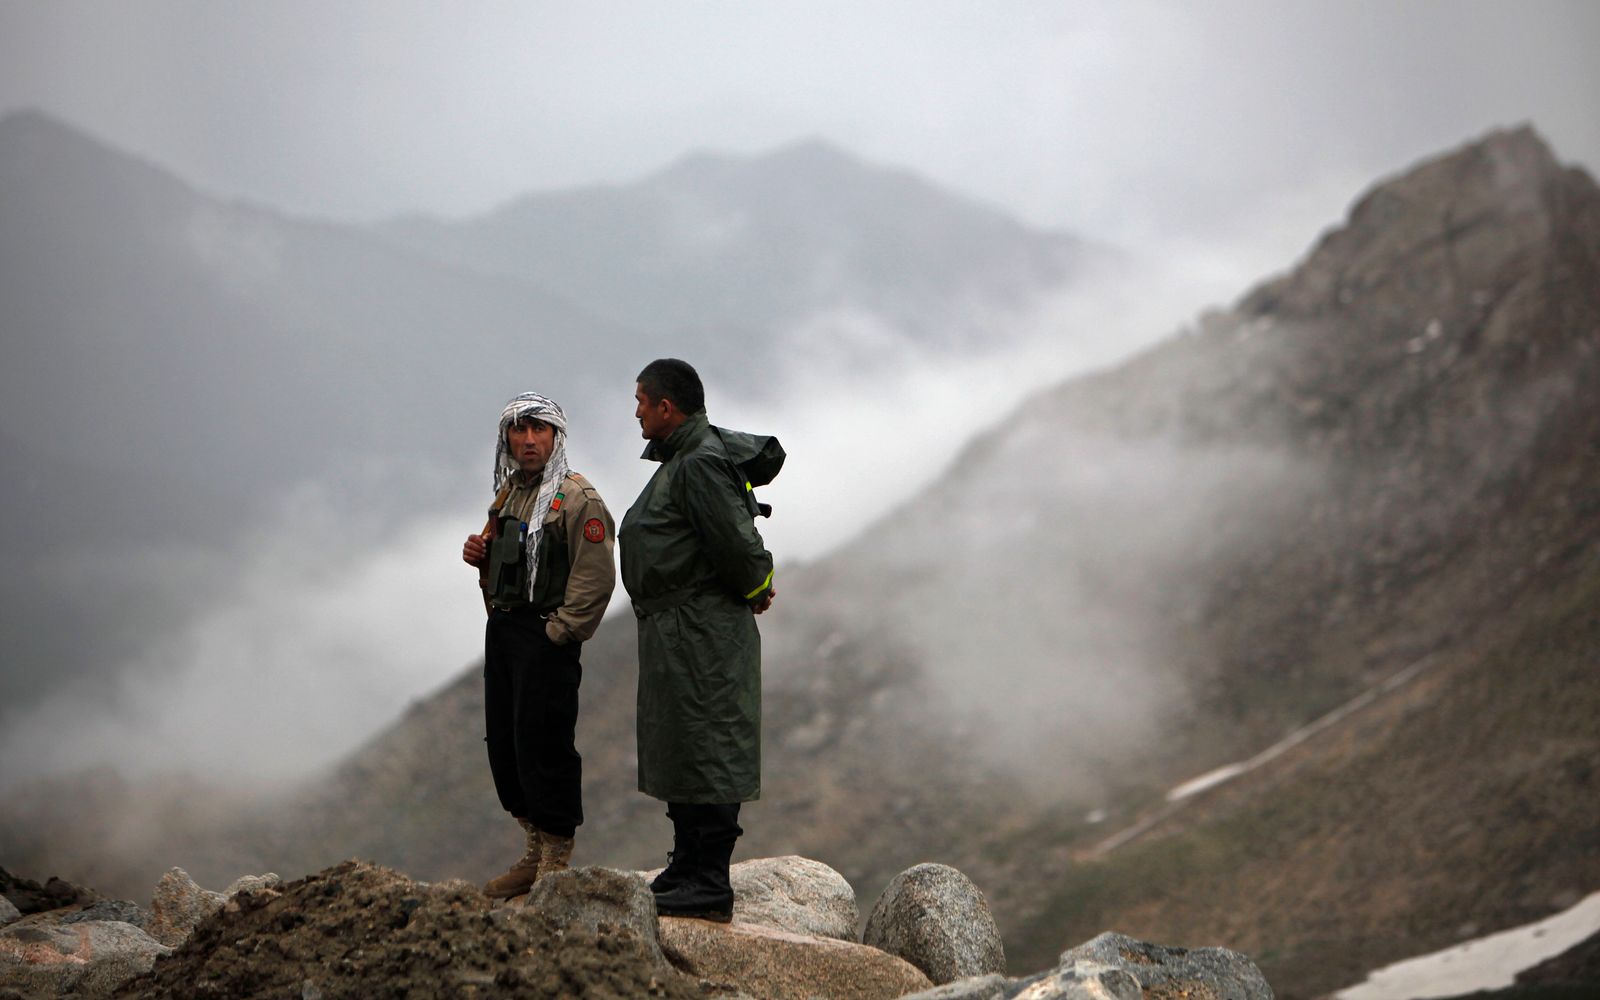 عنصران من القوات الأفغانية يقفان في إحدى مناطق سلسلة جبال هندو كوش. 17 مايو 2020. - REUTERS